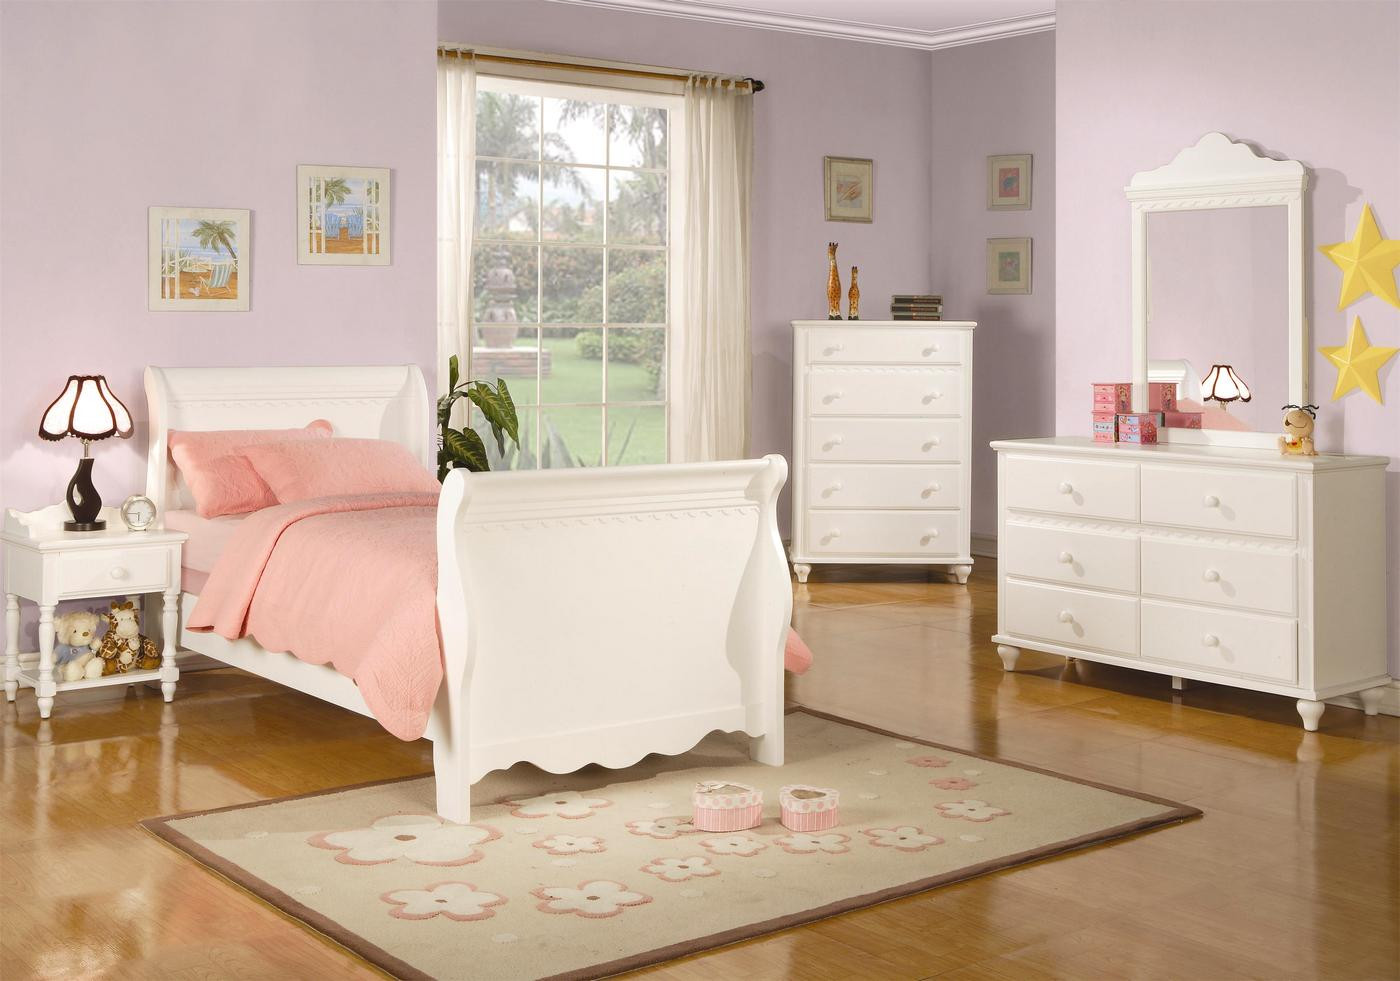 Bedroom Sets For Girls
 Pepper White Traditional Girls Sleigh Bedroom Set